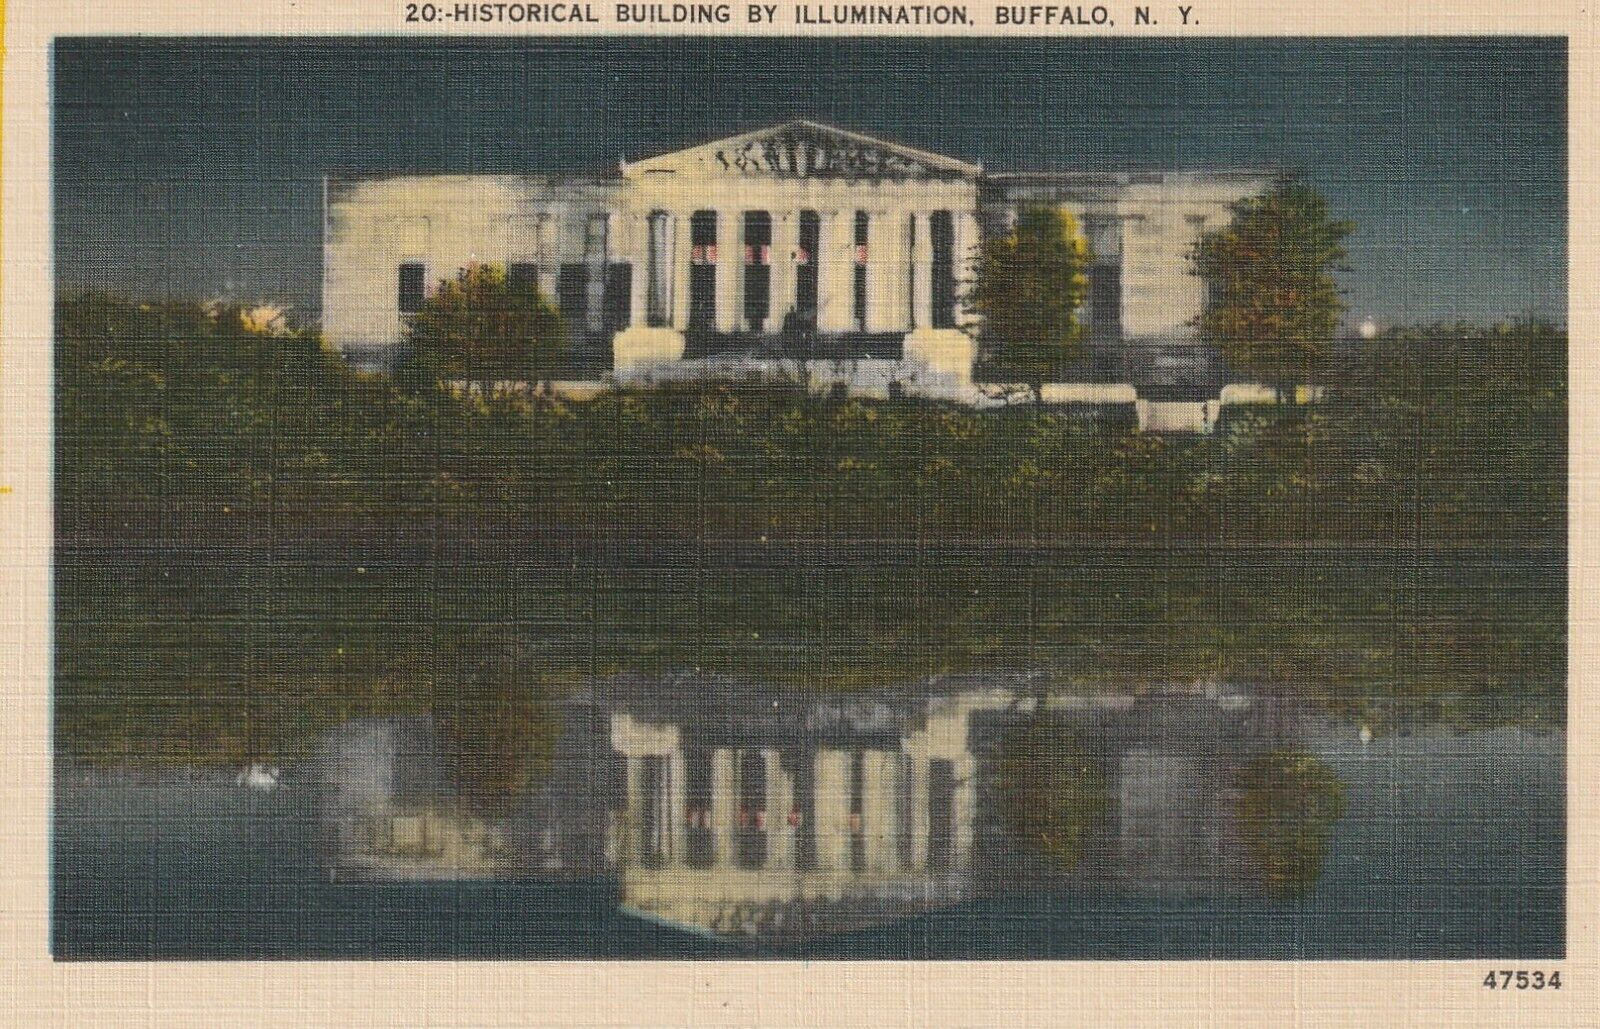 1915-1930 Historical Building by Illumination, Buffalo, NY a255